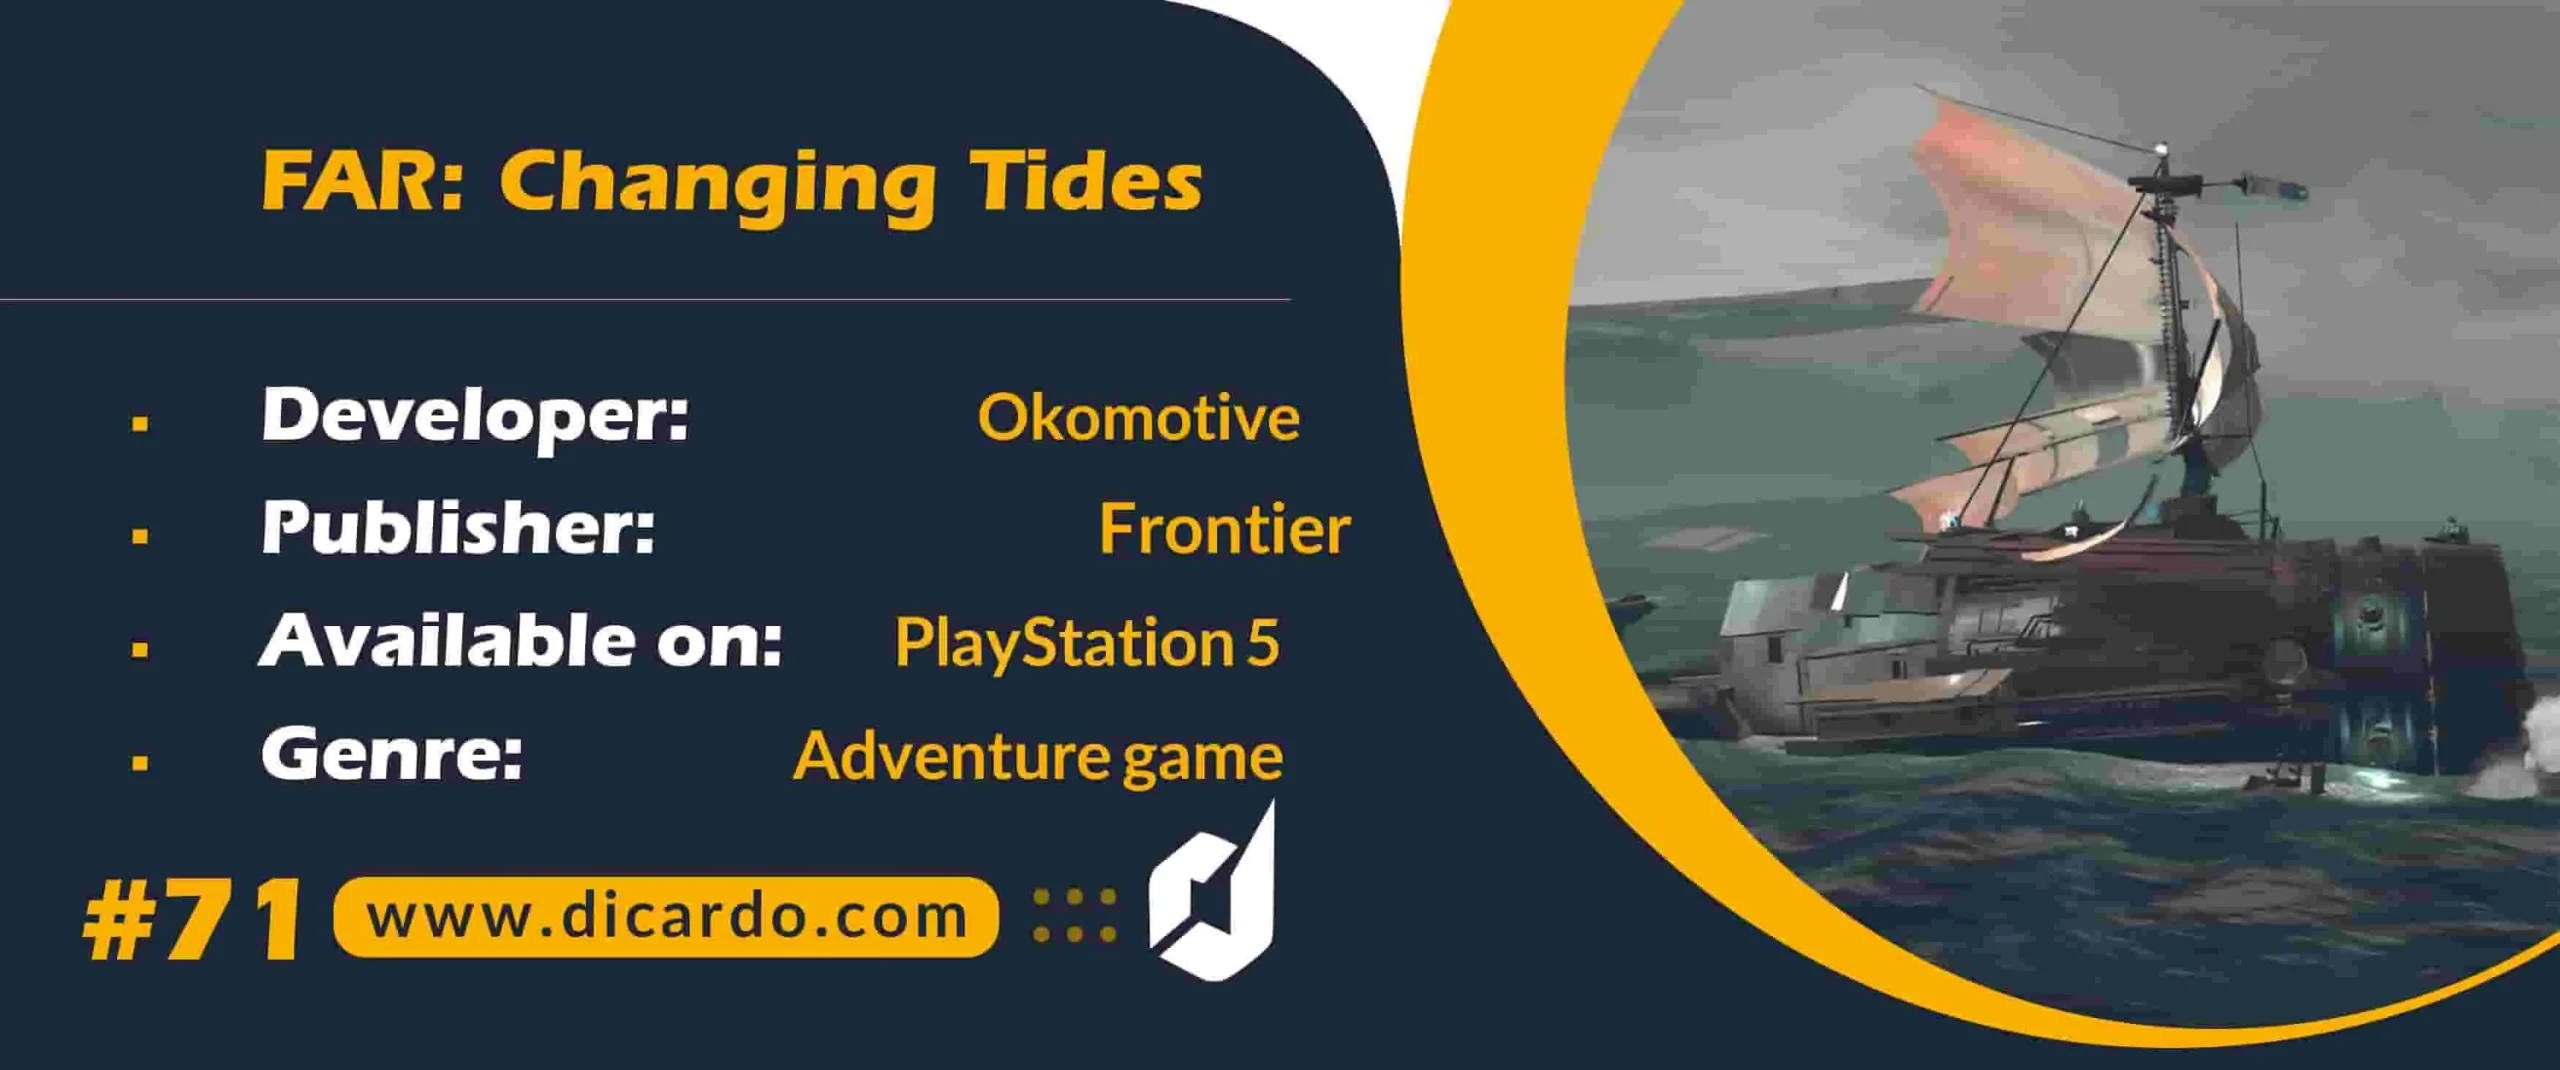 #71 فار چینجینگ تایدز FAR: Changing Tides از بهترین بازیهای PS5 پازلی